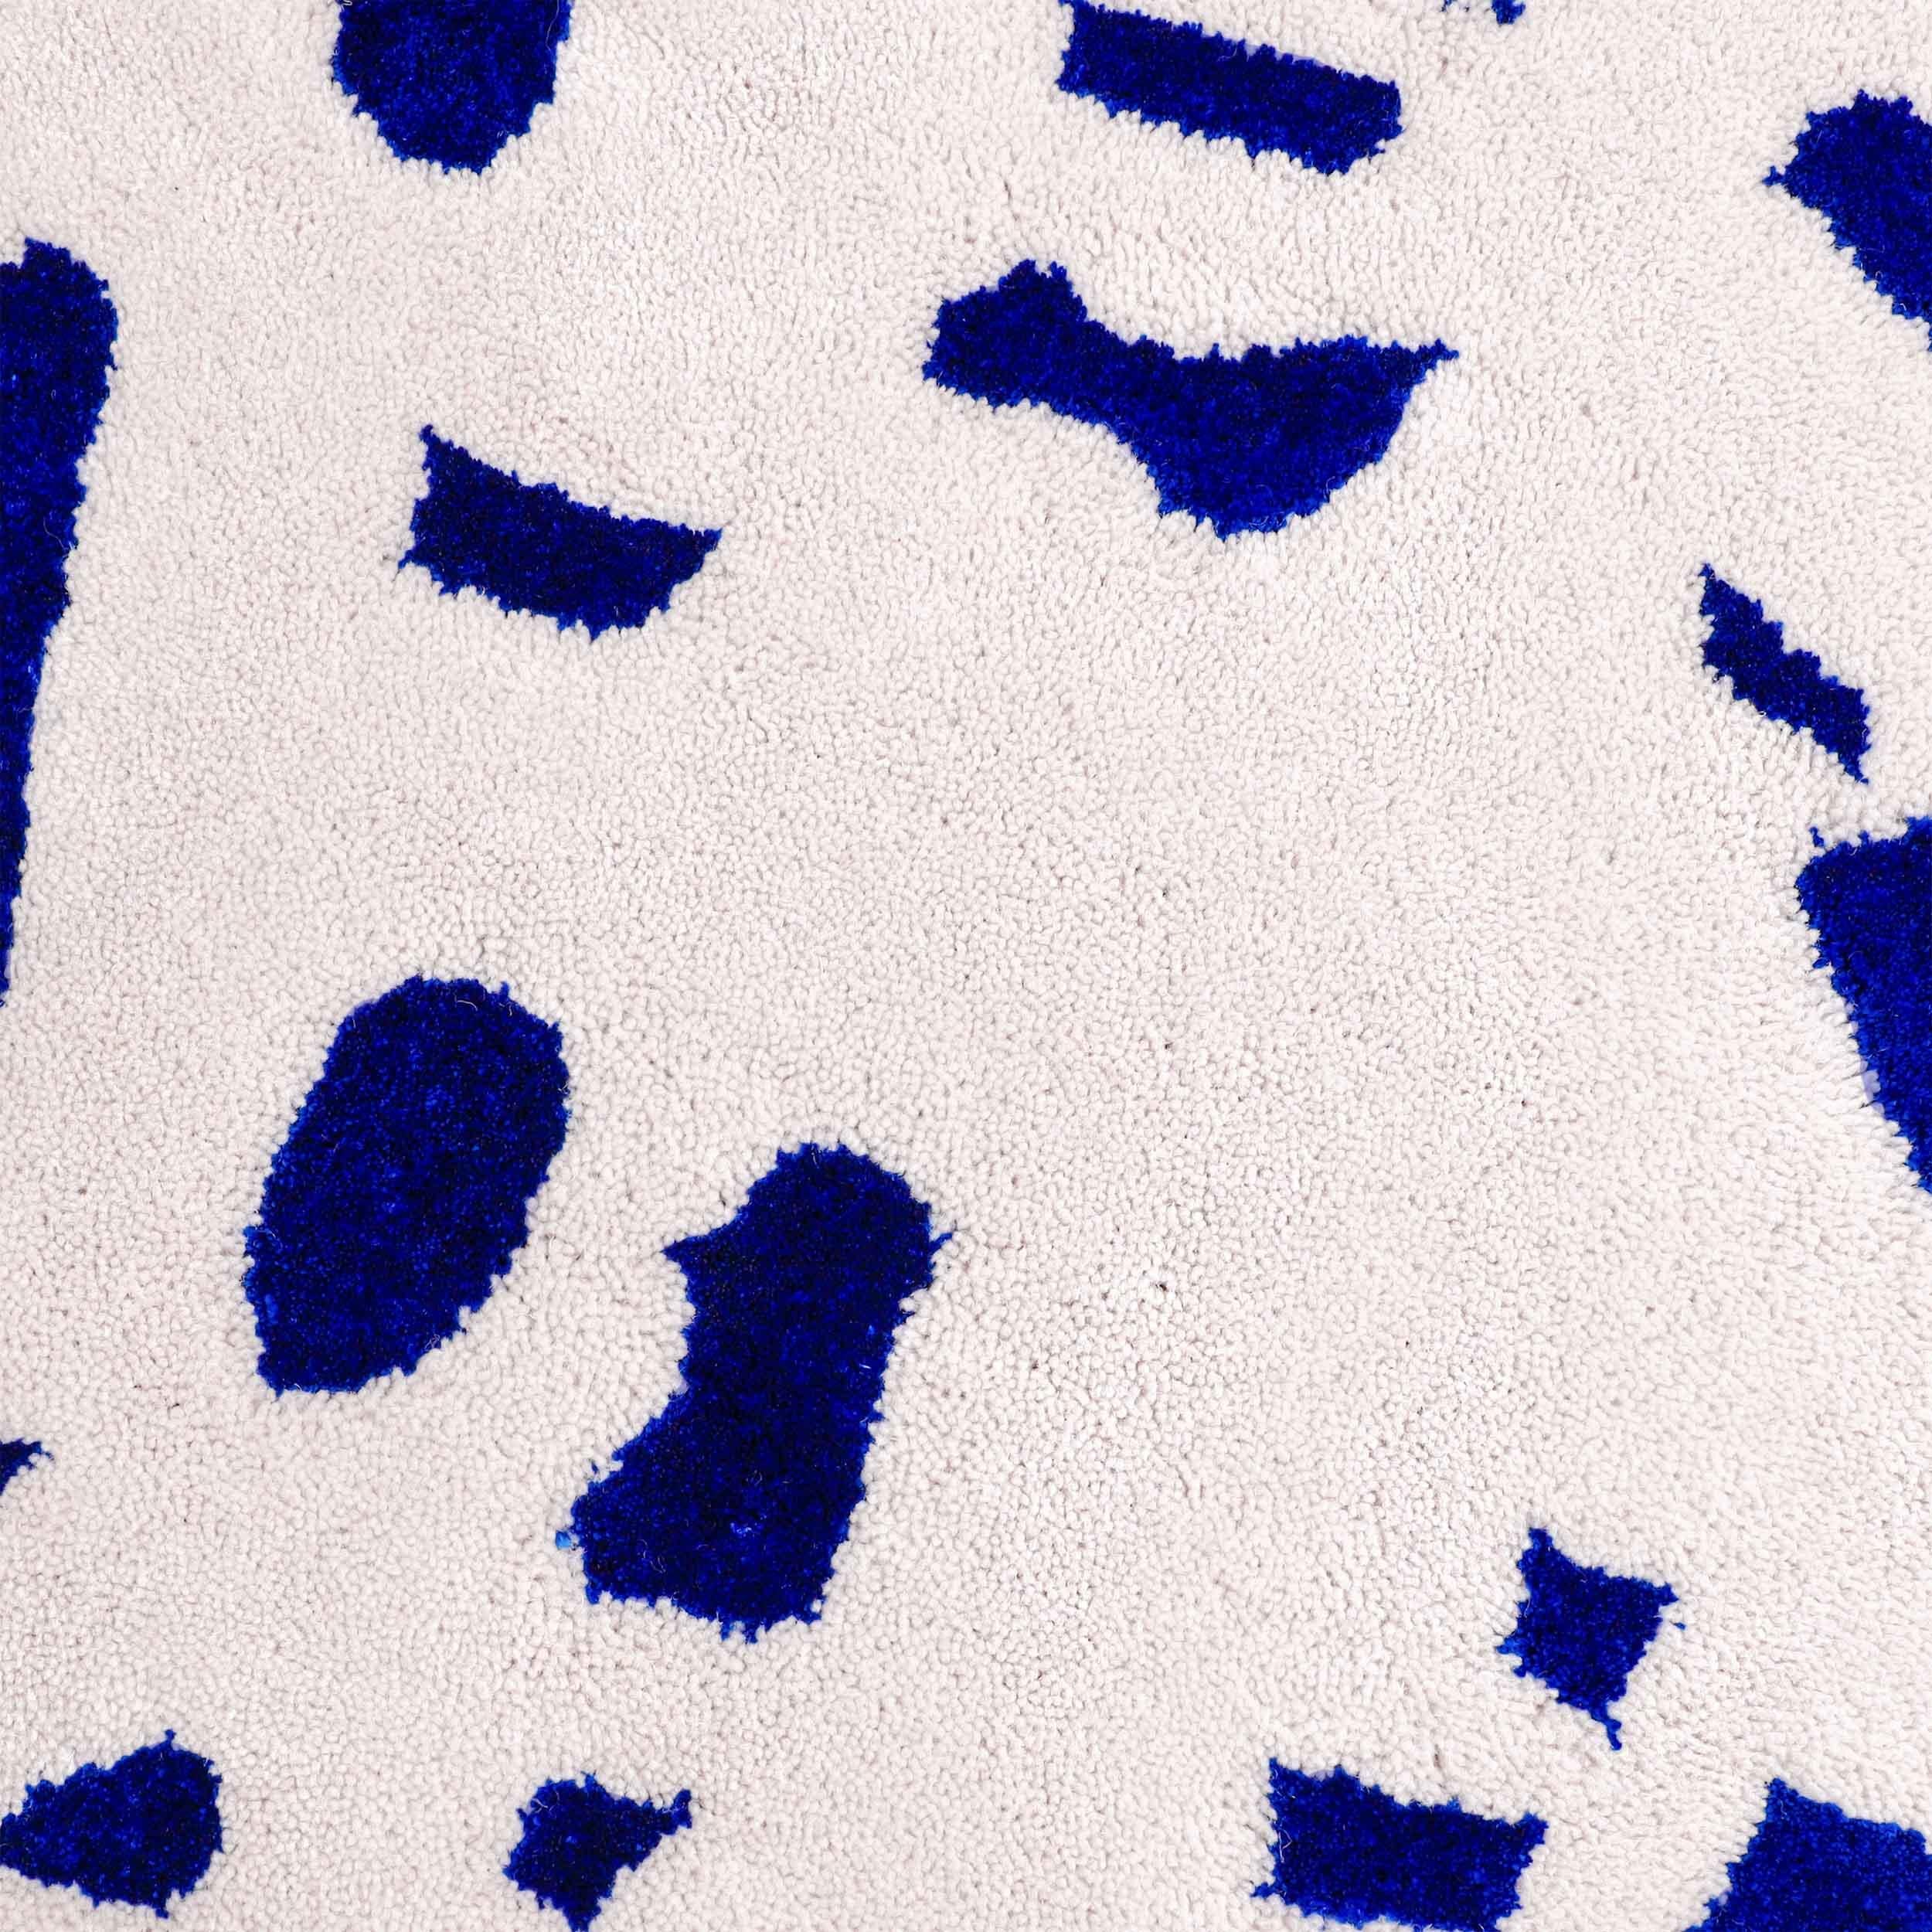 Le motif Speckled squiggle se compose d'une surface en laine résistante avec un motif de mouchetures en viscose bleue brillante.

Taille : 4.5 x 6.5 ft 
MATERIAL : Laine + viscose
Couleur : Blanc cassé/gris clair + Bleu électrique*
Fabriqué en